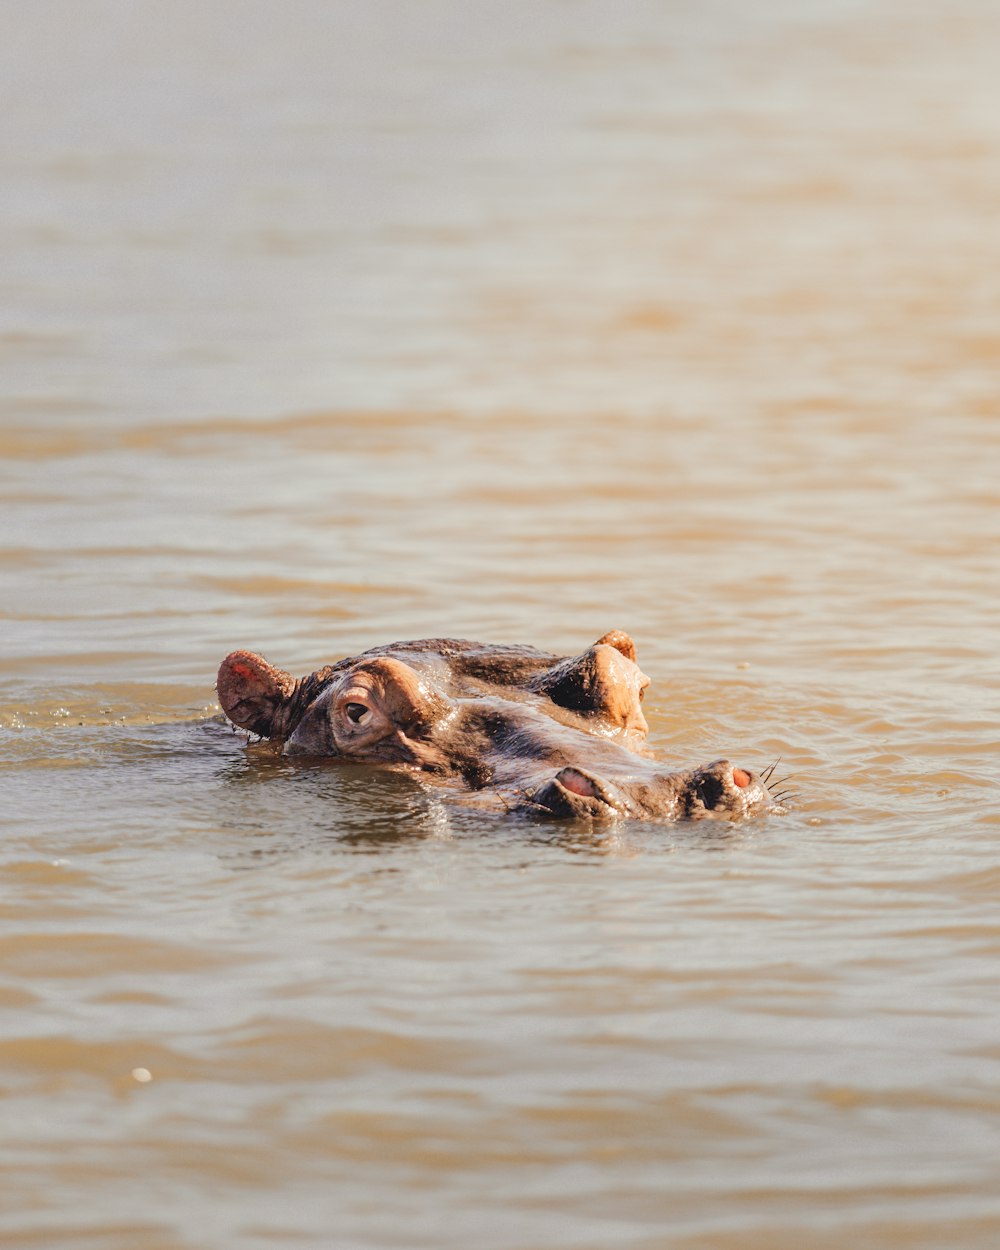 Un hipopótamo nadando en el agua